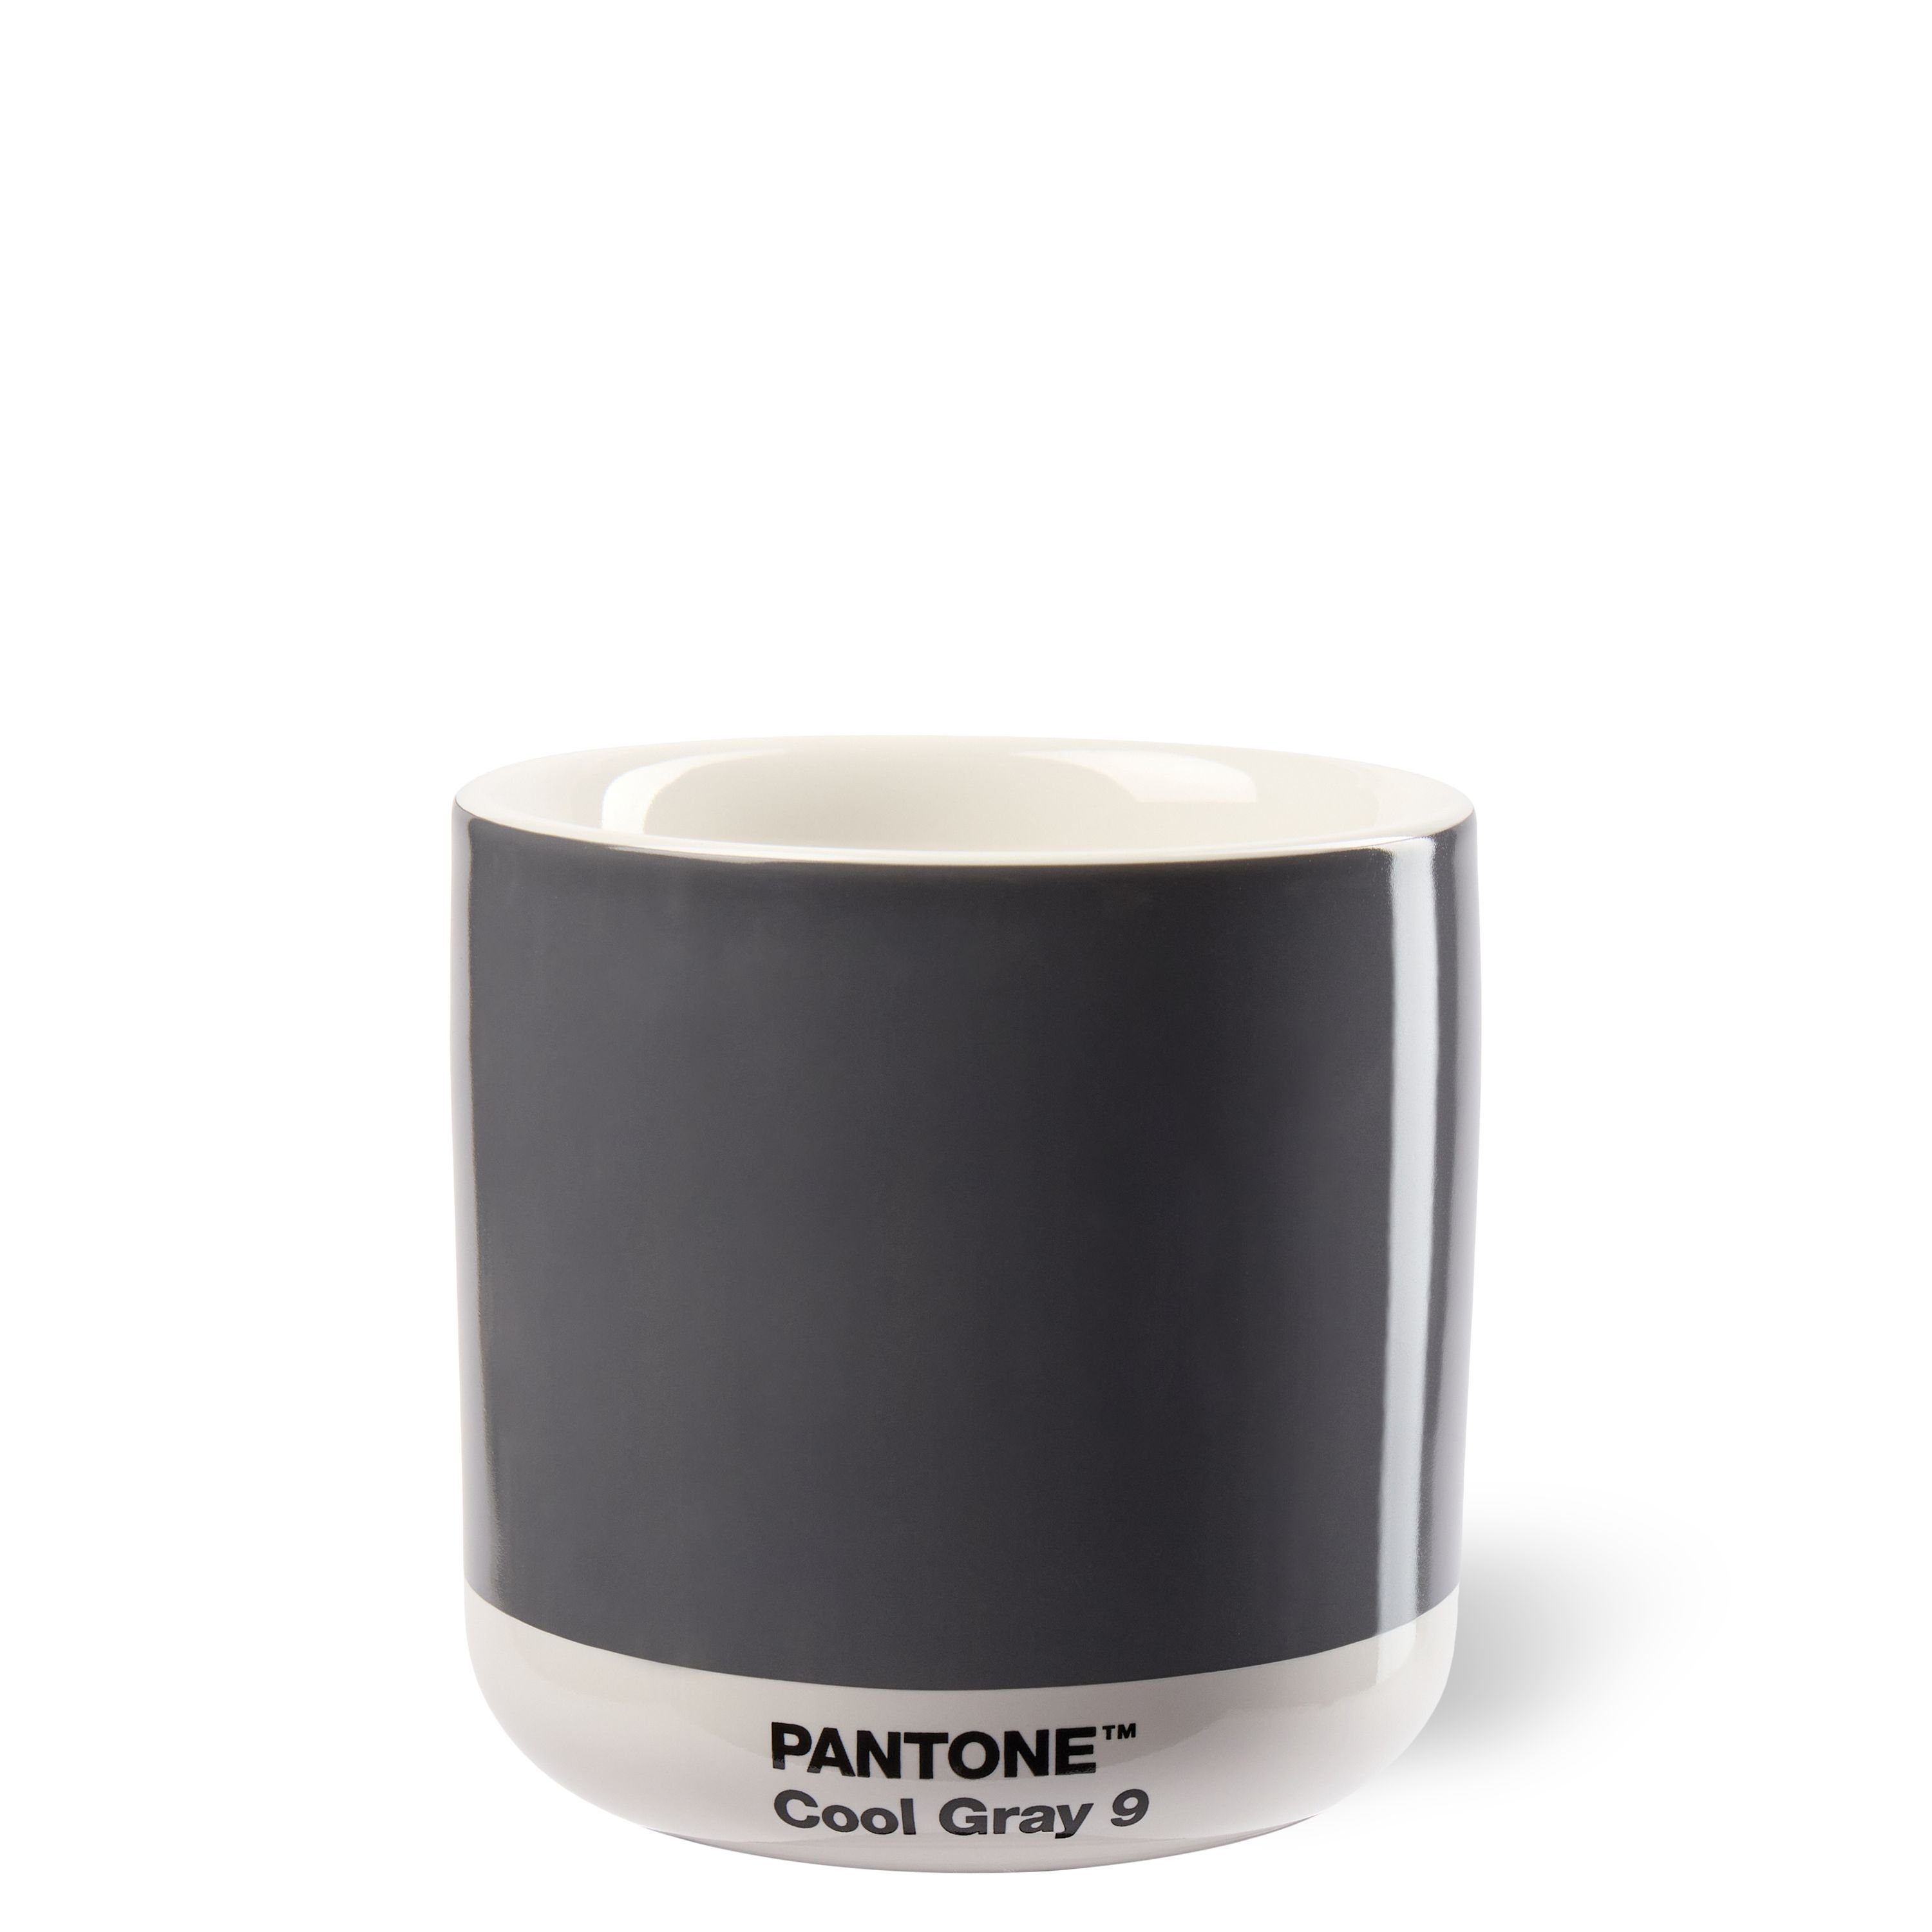 PANTONE Kaffeeservice, PANTONE Porzellan Thermobecher Latte Macchiato, 220 ml Cool Gray 9 C